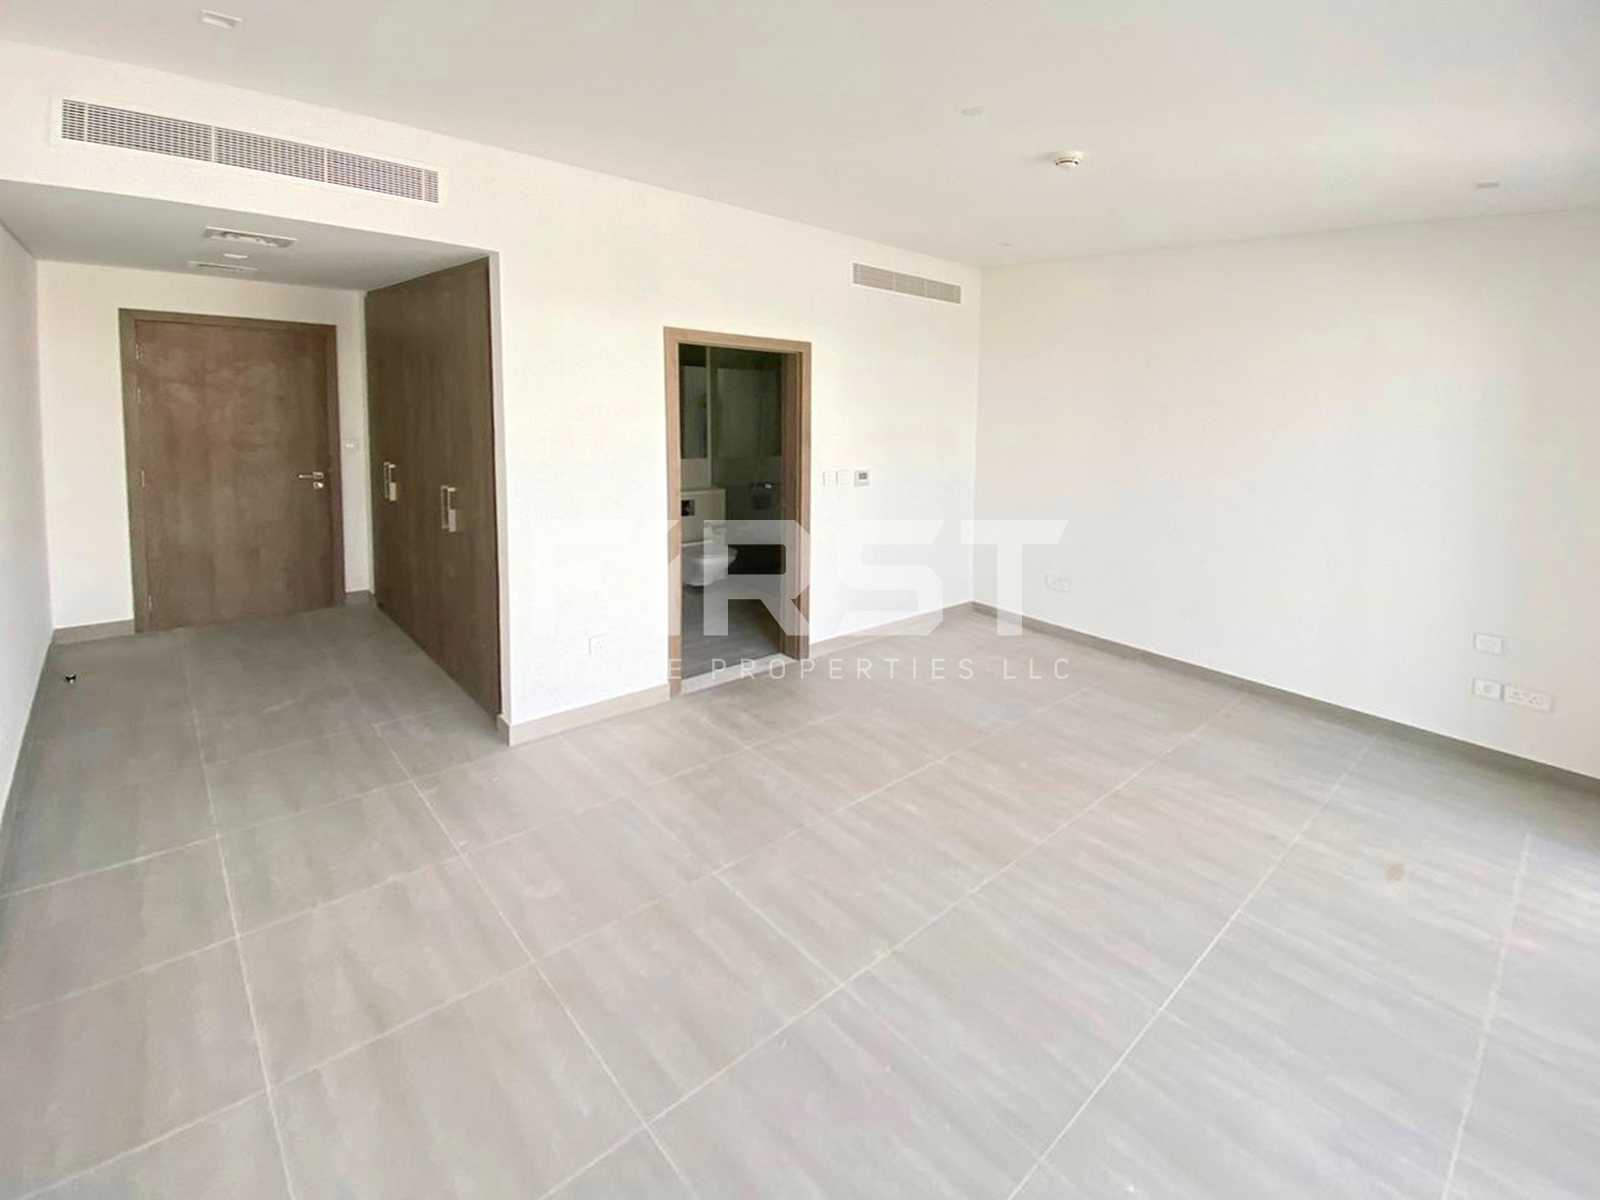 External Photo of 4 Bedroom Duplex Type 4Y in Yas Acres Yas Island AUH UAE (7).jpg